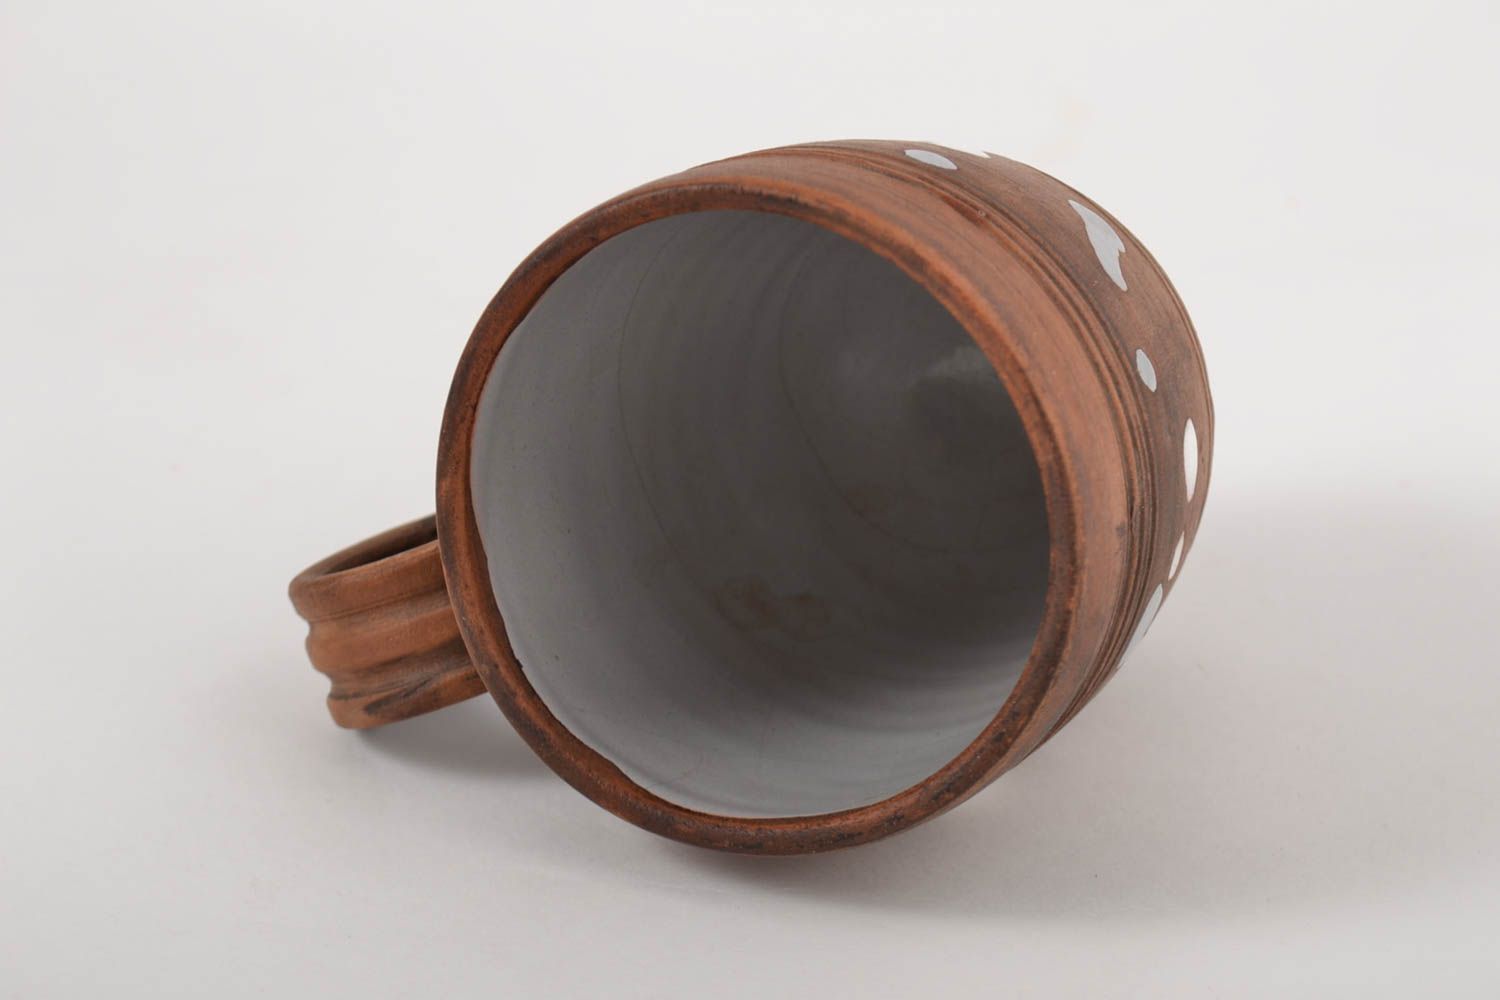 XL 15 oz tea mug in brown color with handle 0,68 lb photo 3